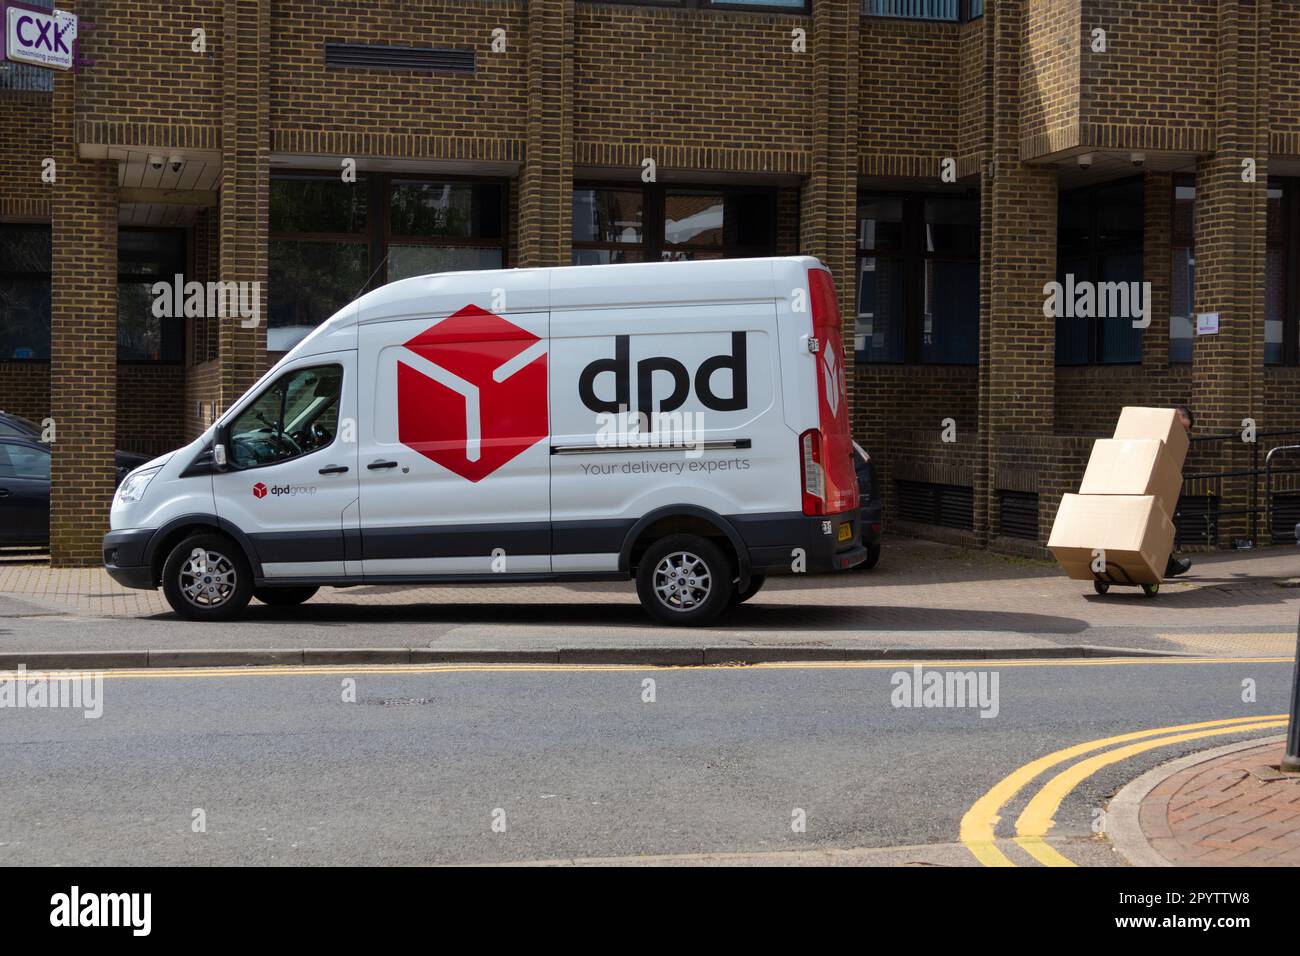 Camionnette de livraison DPD garée sur la chaussée avec des boîtes de transport de conducteur, ashford, kent, royaume-uni Banque D'Images